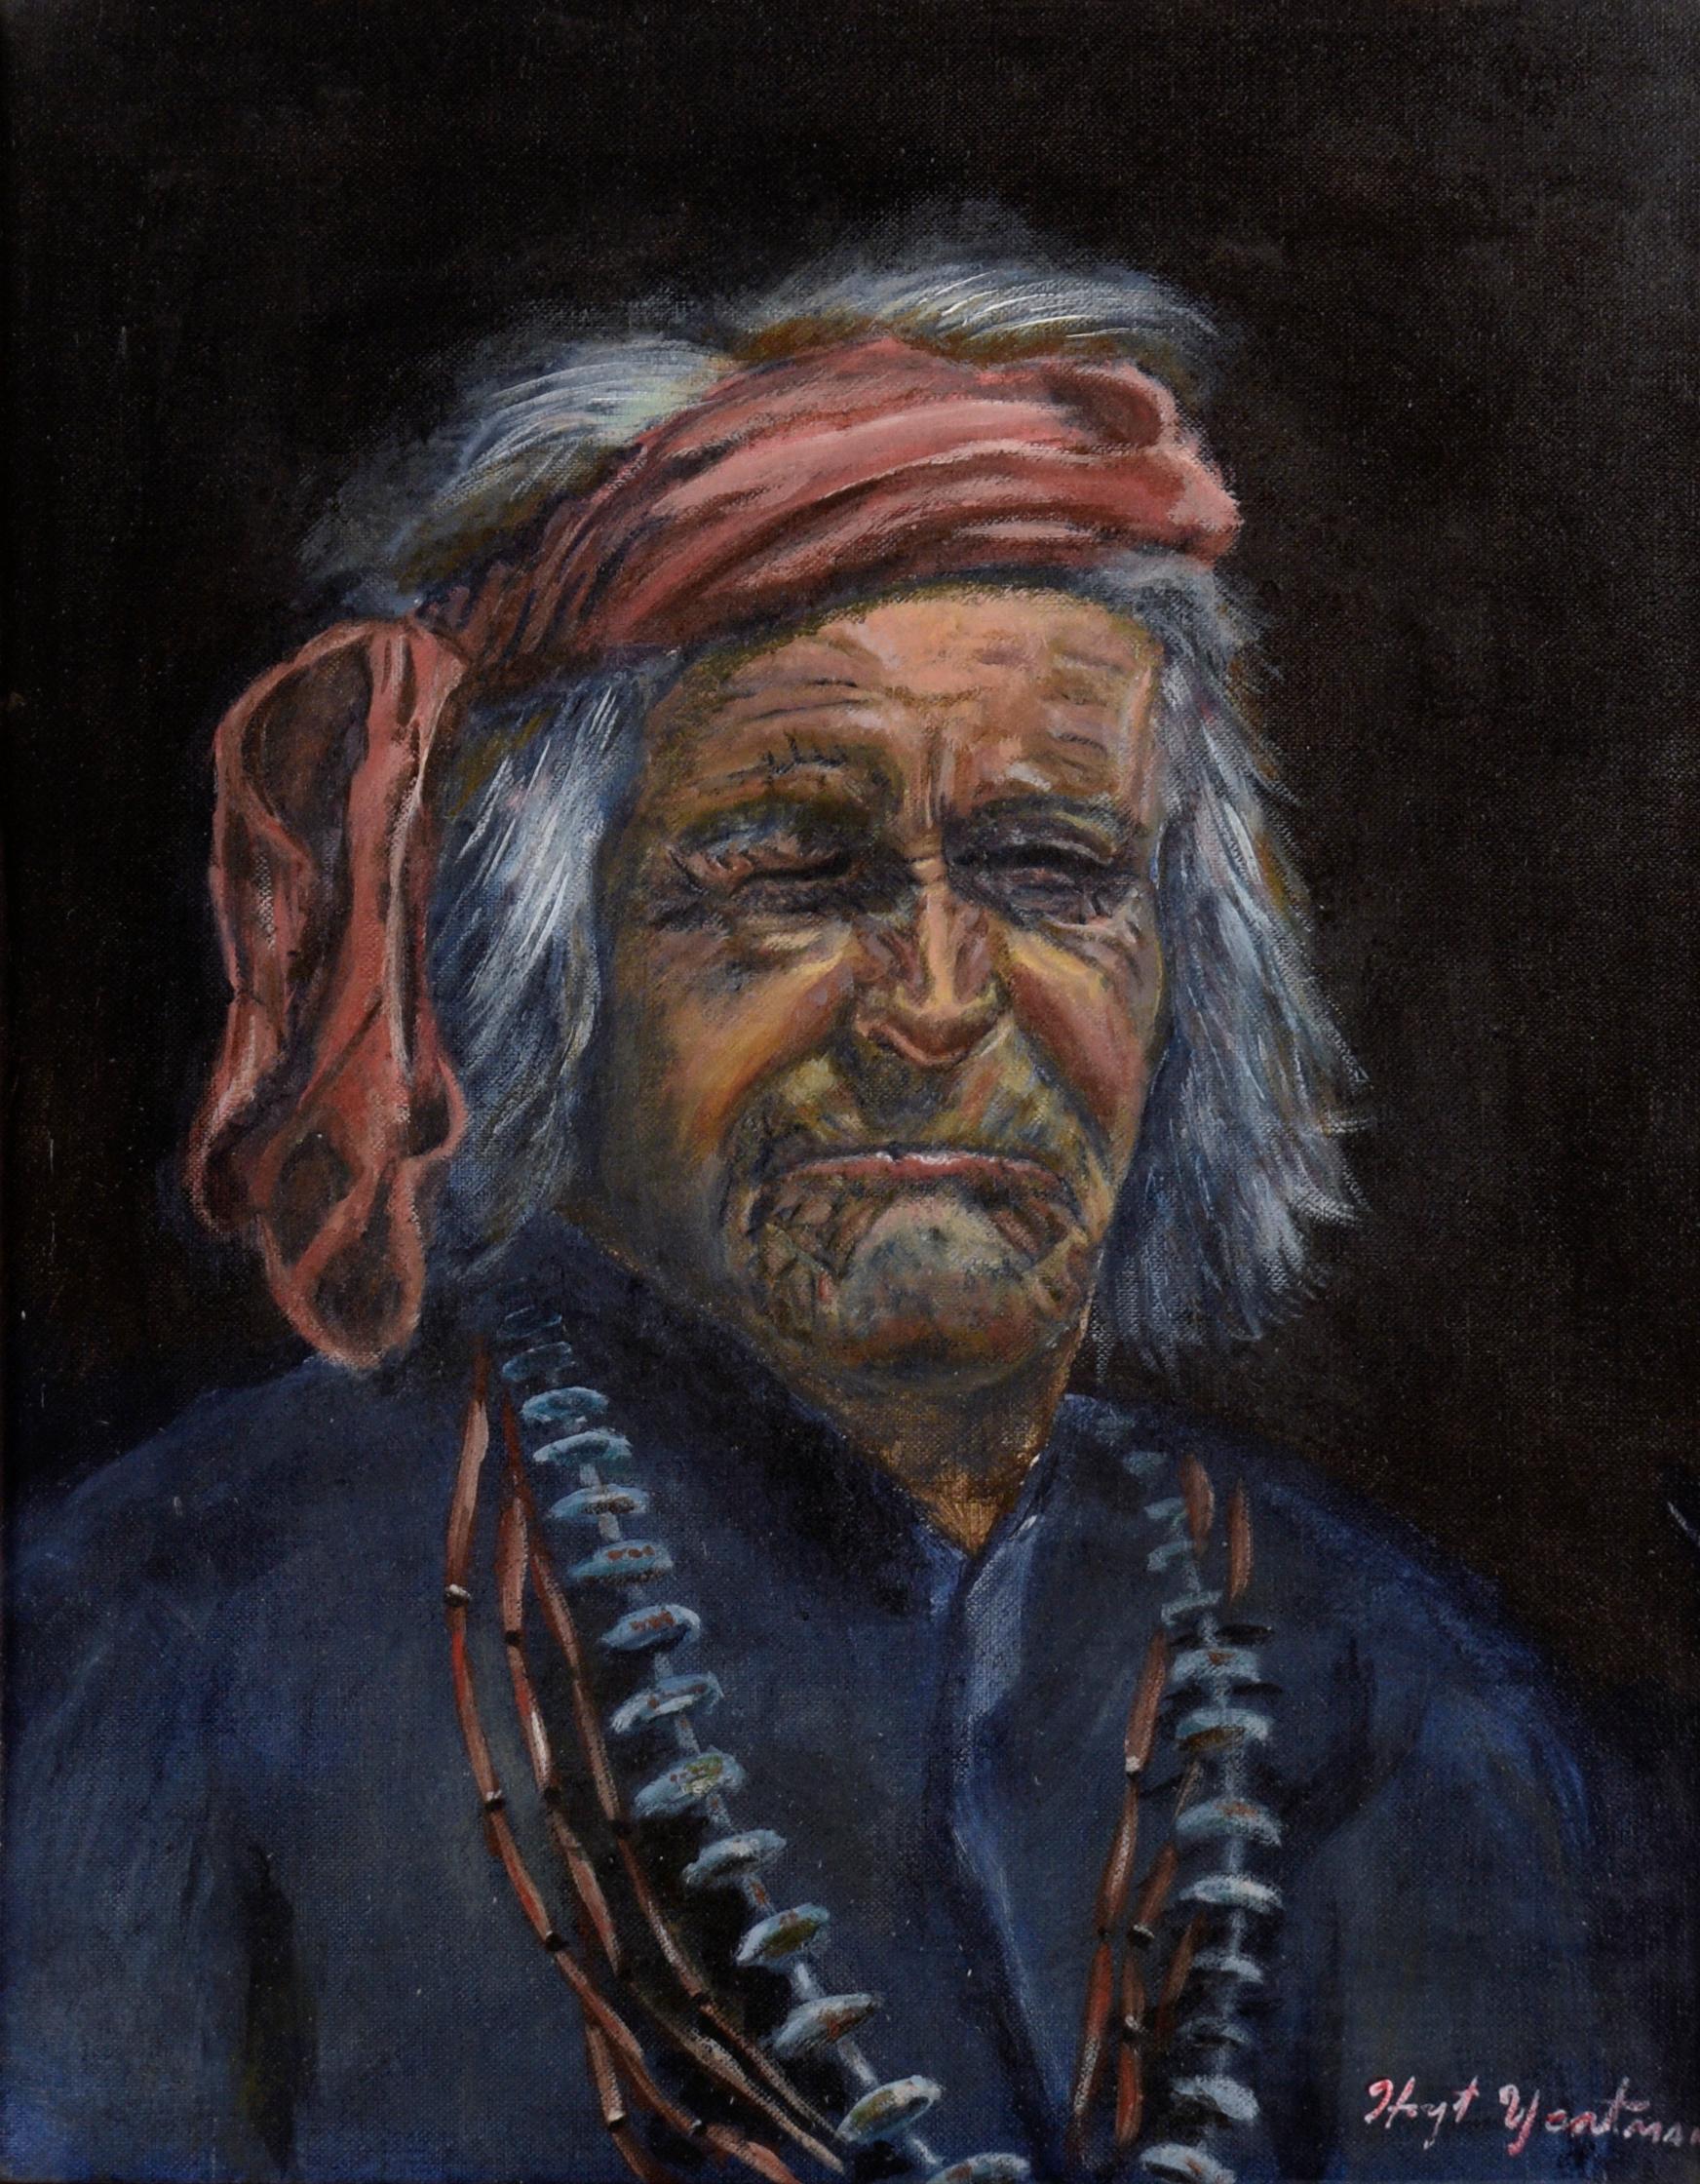 Porträt einer älteren amerikanischen Ureinwohnerin in Öl auf Künstlerkarton – Painting von Hoyt Yeatman Jr.